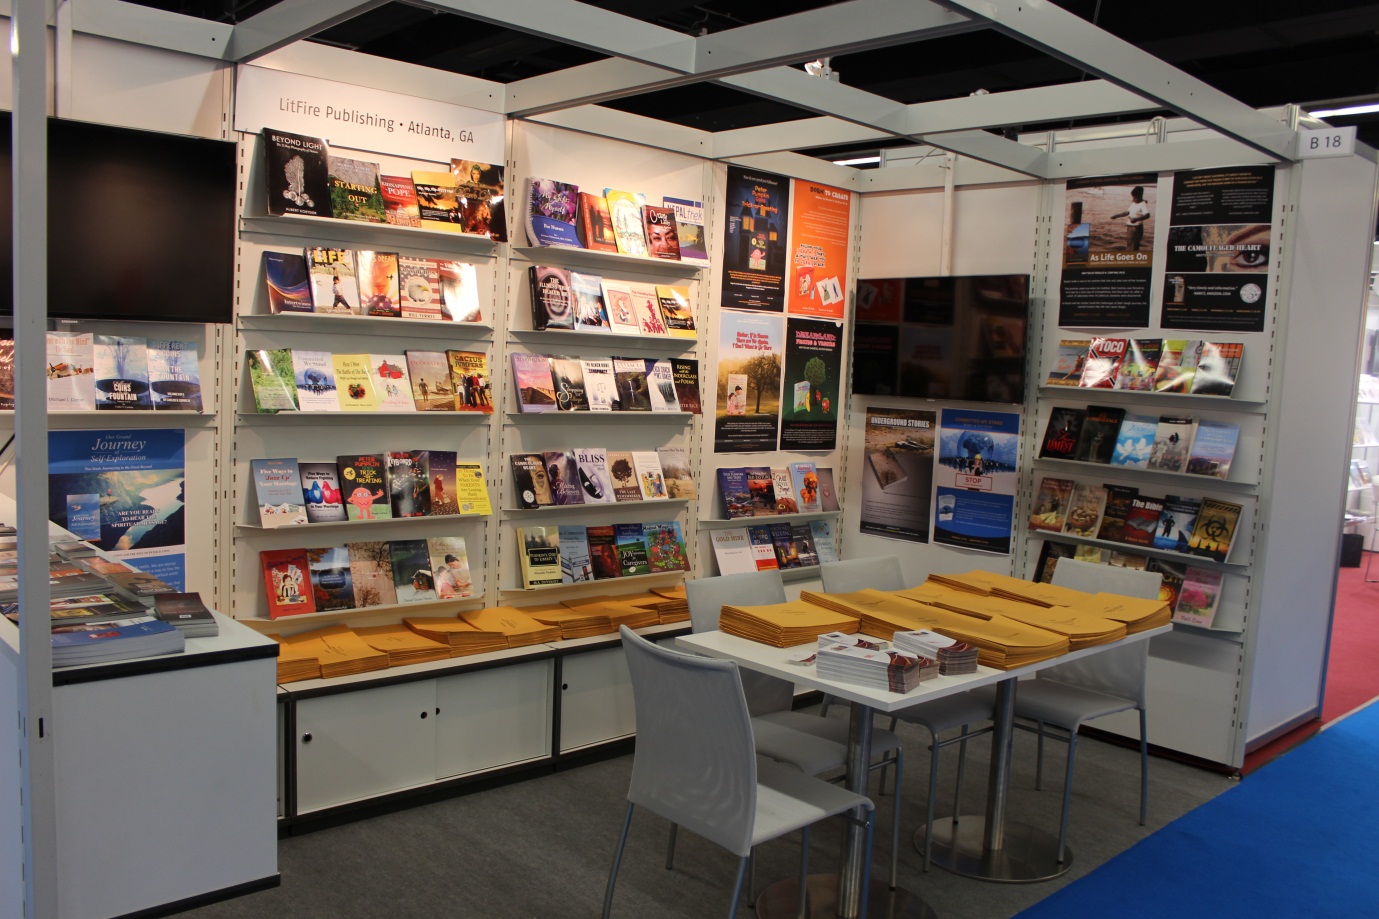 Litfire Frankfurt Book Fair 2015